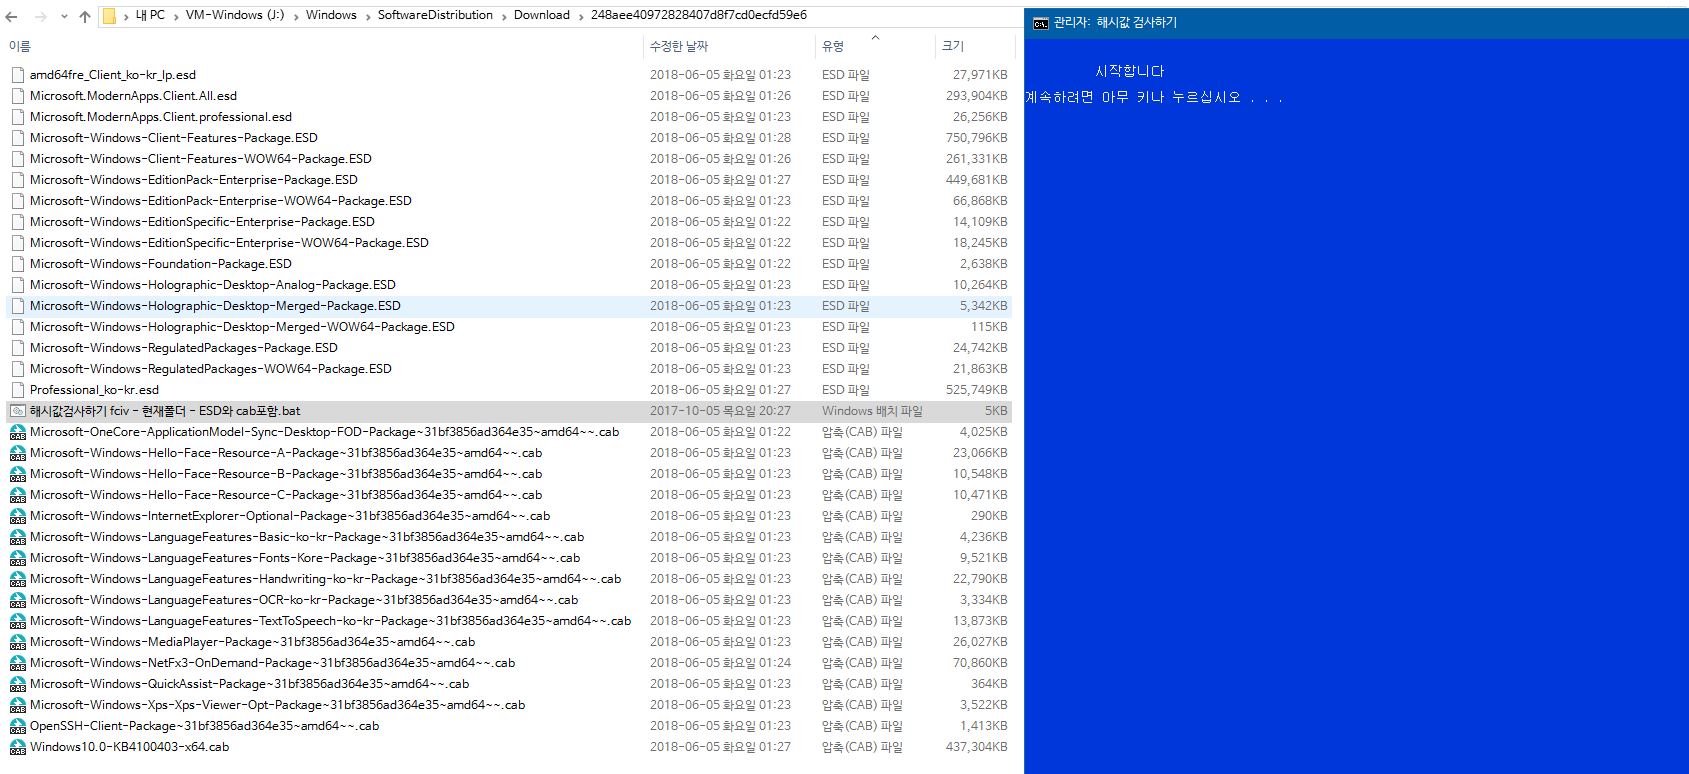 Windows 10 인사이더 프리뷰 RTM 때와 정식 출시 후에 윈도 업데이트 할 때 [업그레이드] 나오는 파일들이 다른지 확인합니다 - 현재 버전1803 RS4 레드스톤4 대상으로 확인 2018-06-05_014659.png